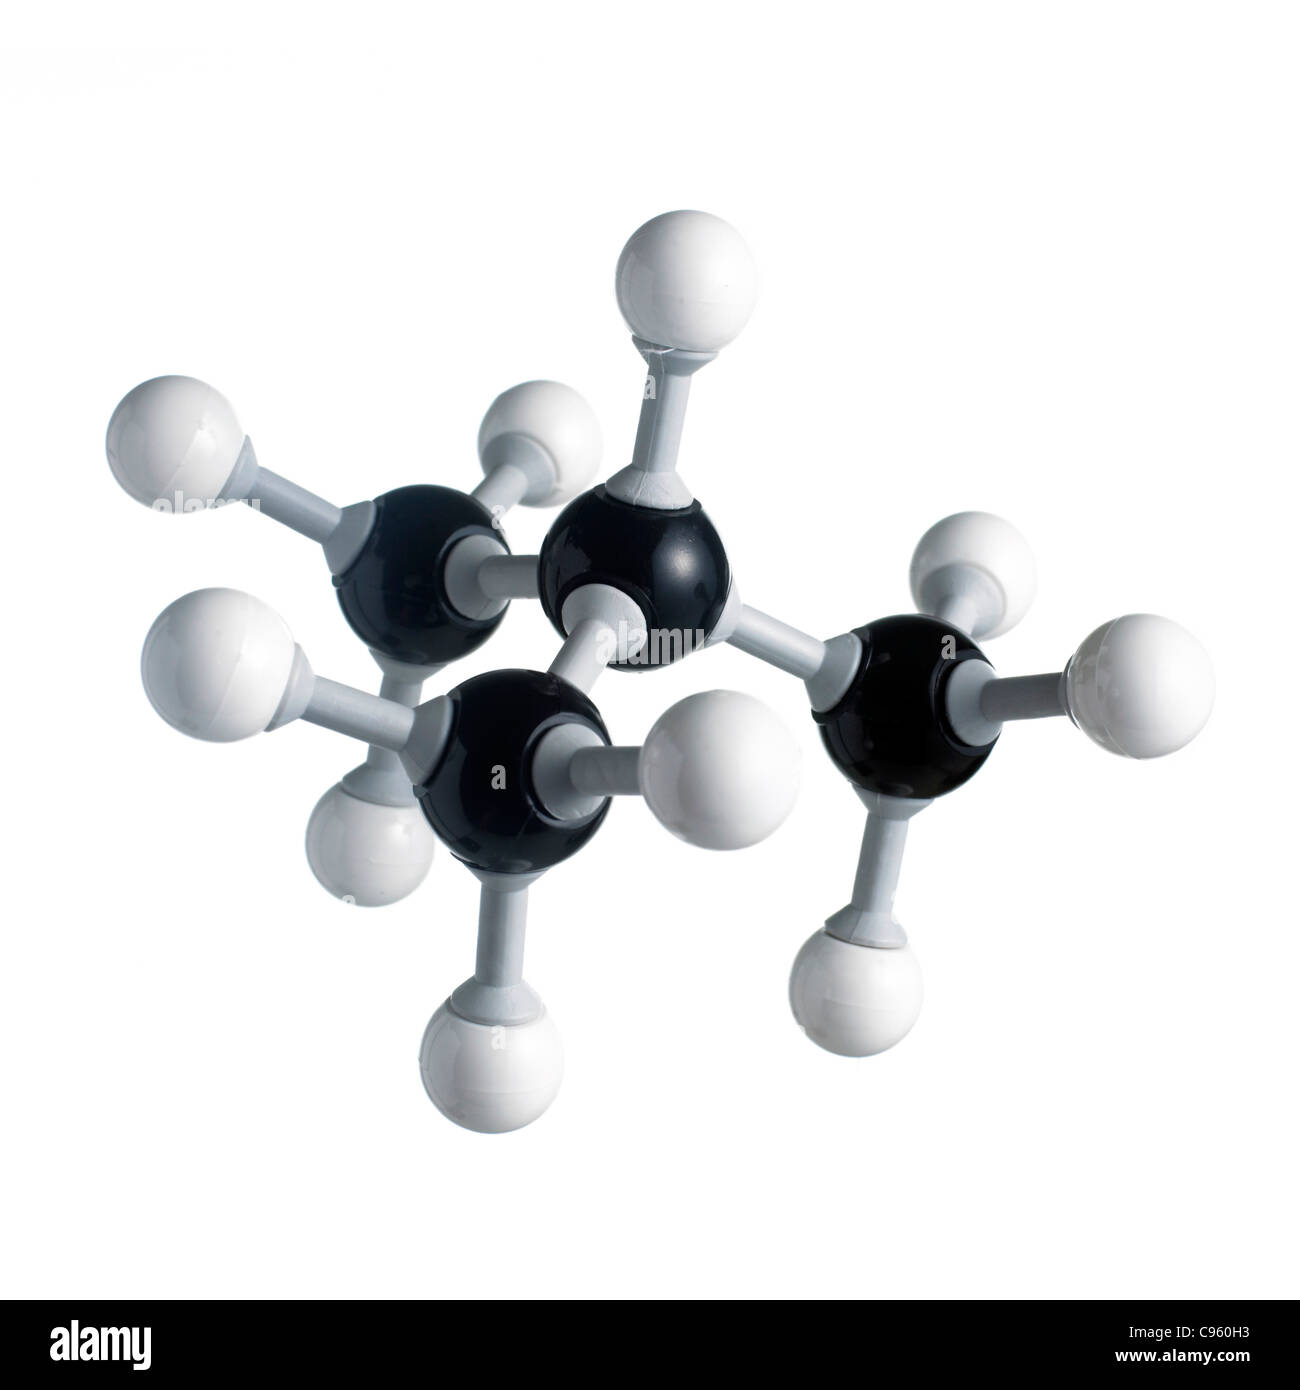 Isobutan Molekül. Atome als Kugeln dargestellt werden und sind farblich gekennzeichnet: Kohlenstoff (schwarz) und Wasserstoff (weiß). Stockfoto